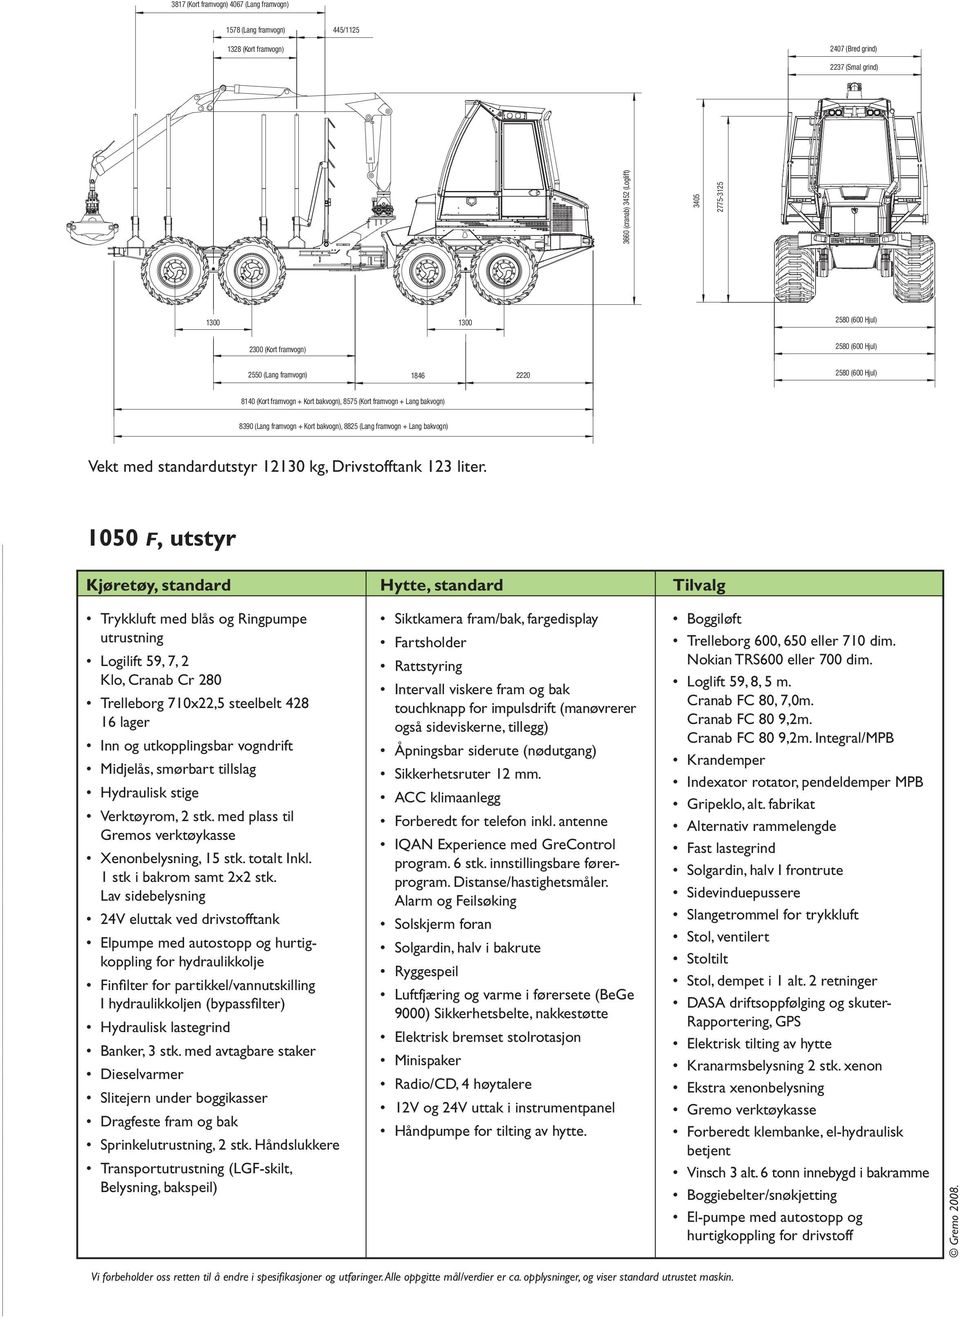 (Lang framvogn + Lang bakvogn) Vekt med standardutstyr 12130 kg, Drivstofftank 123 liter.